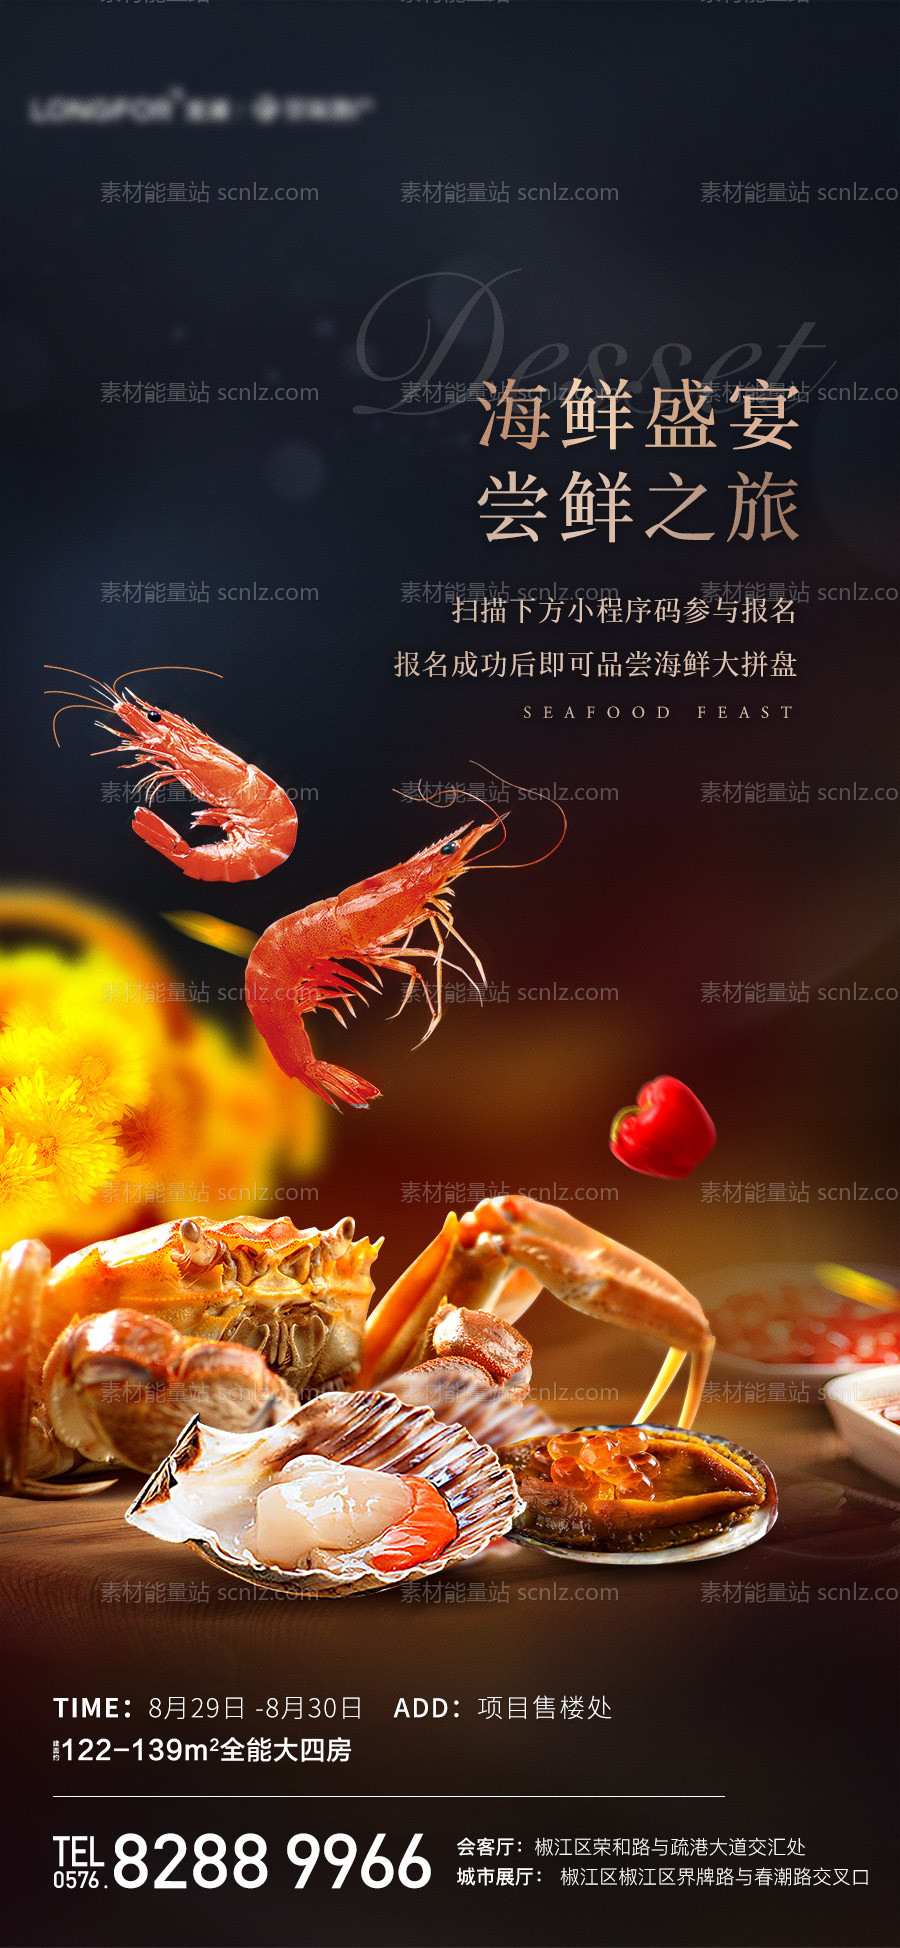 素材能量站-海鲜盛宴活动海报